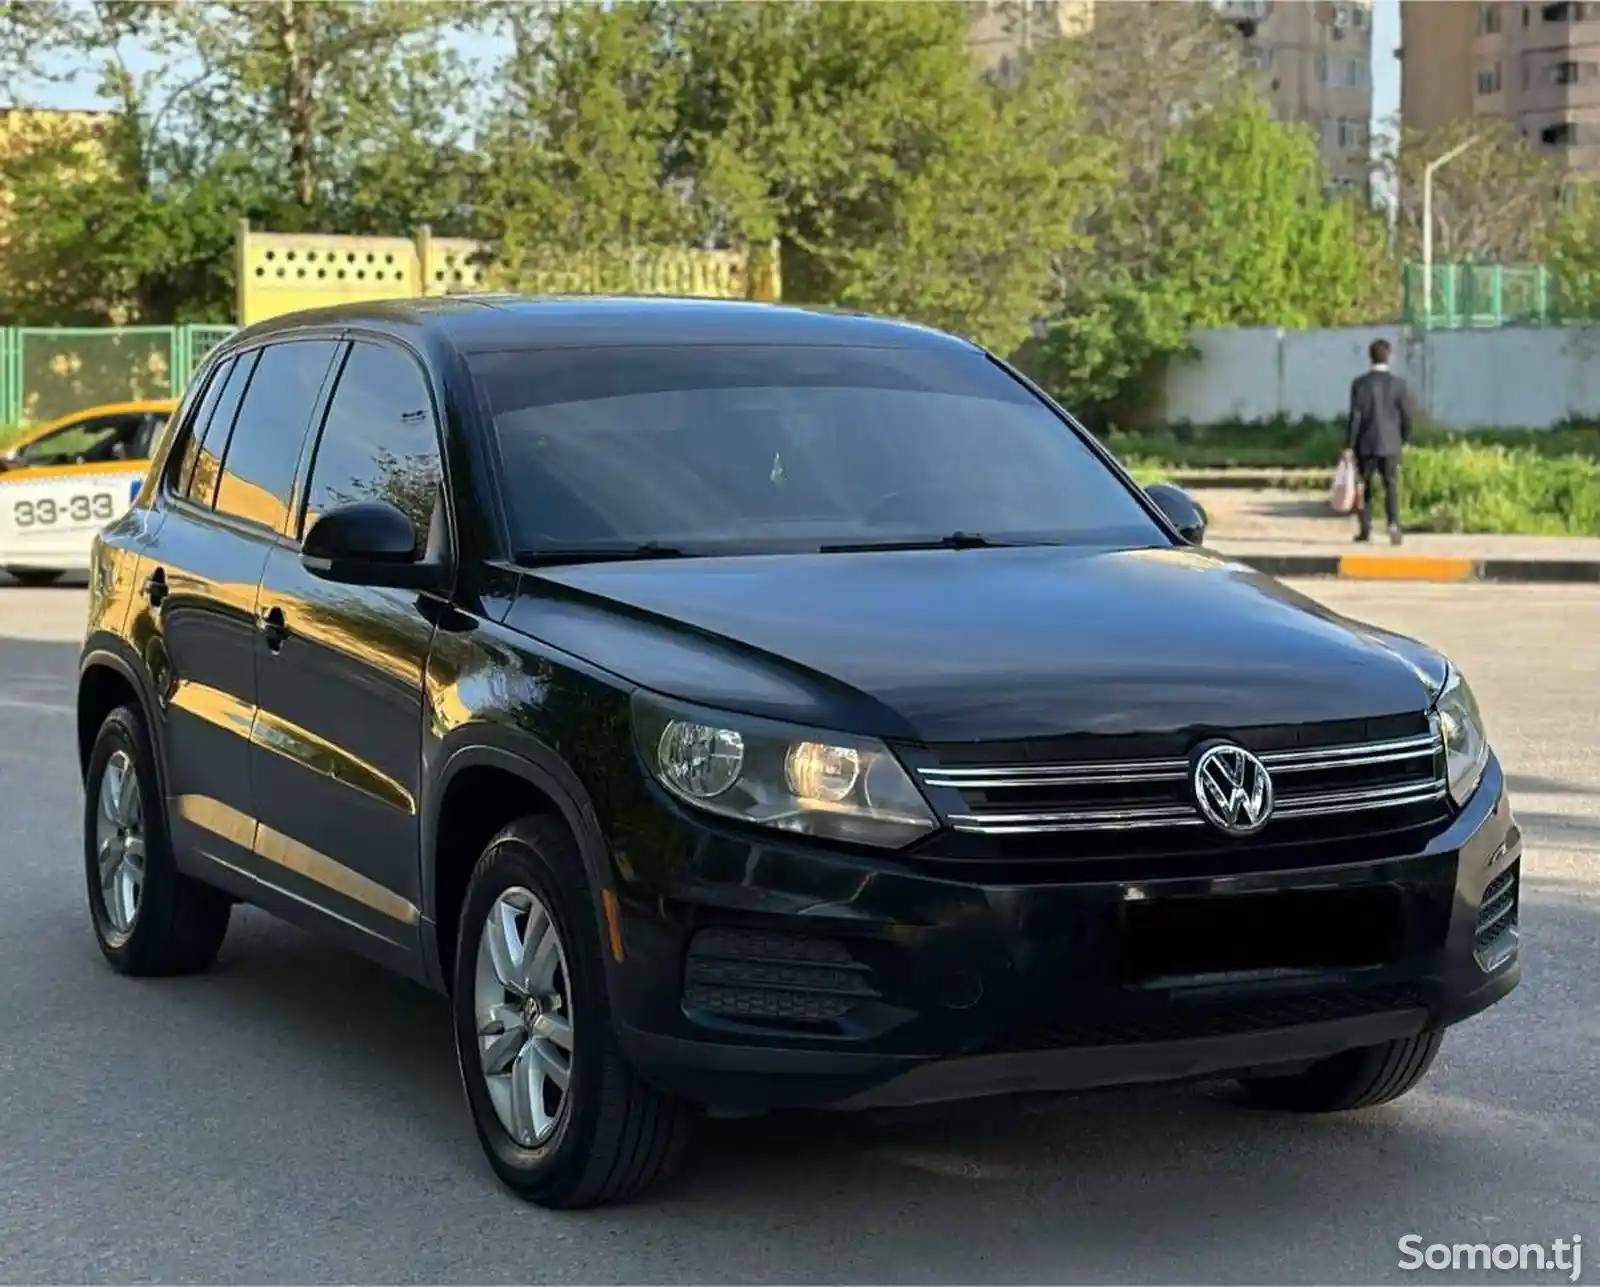 Volkswagen Tiguan, 2013-2